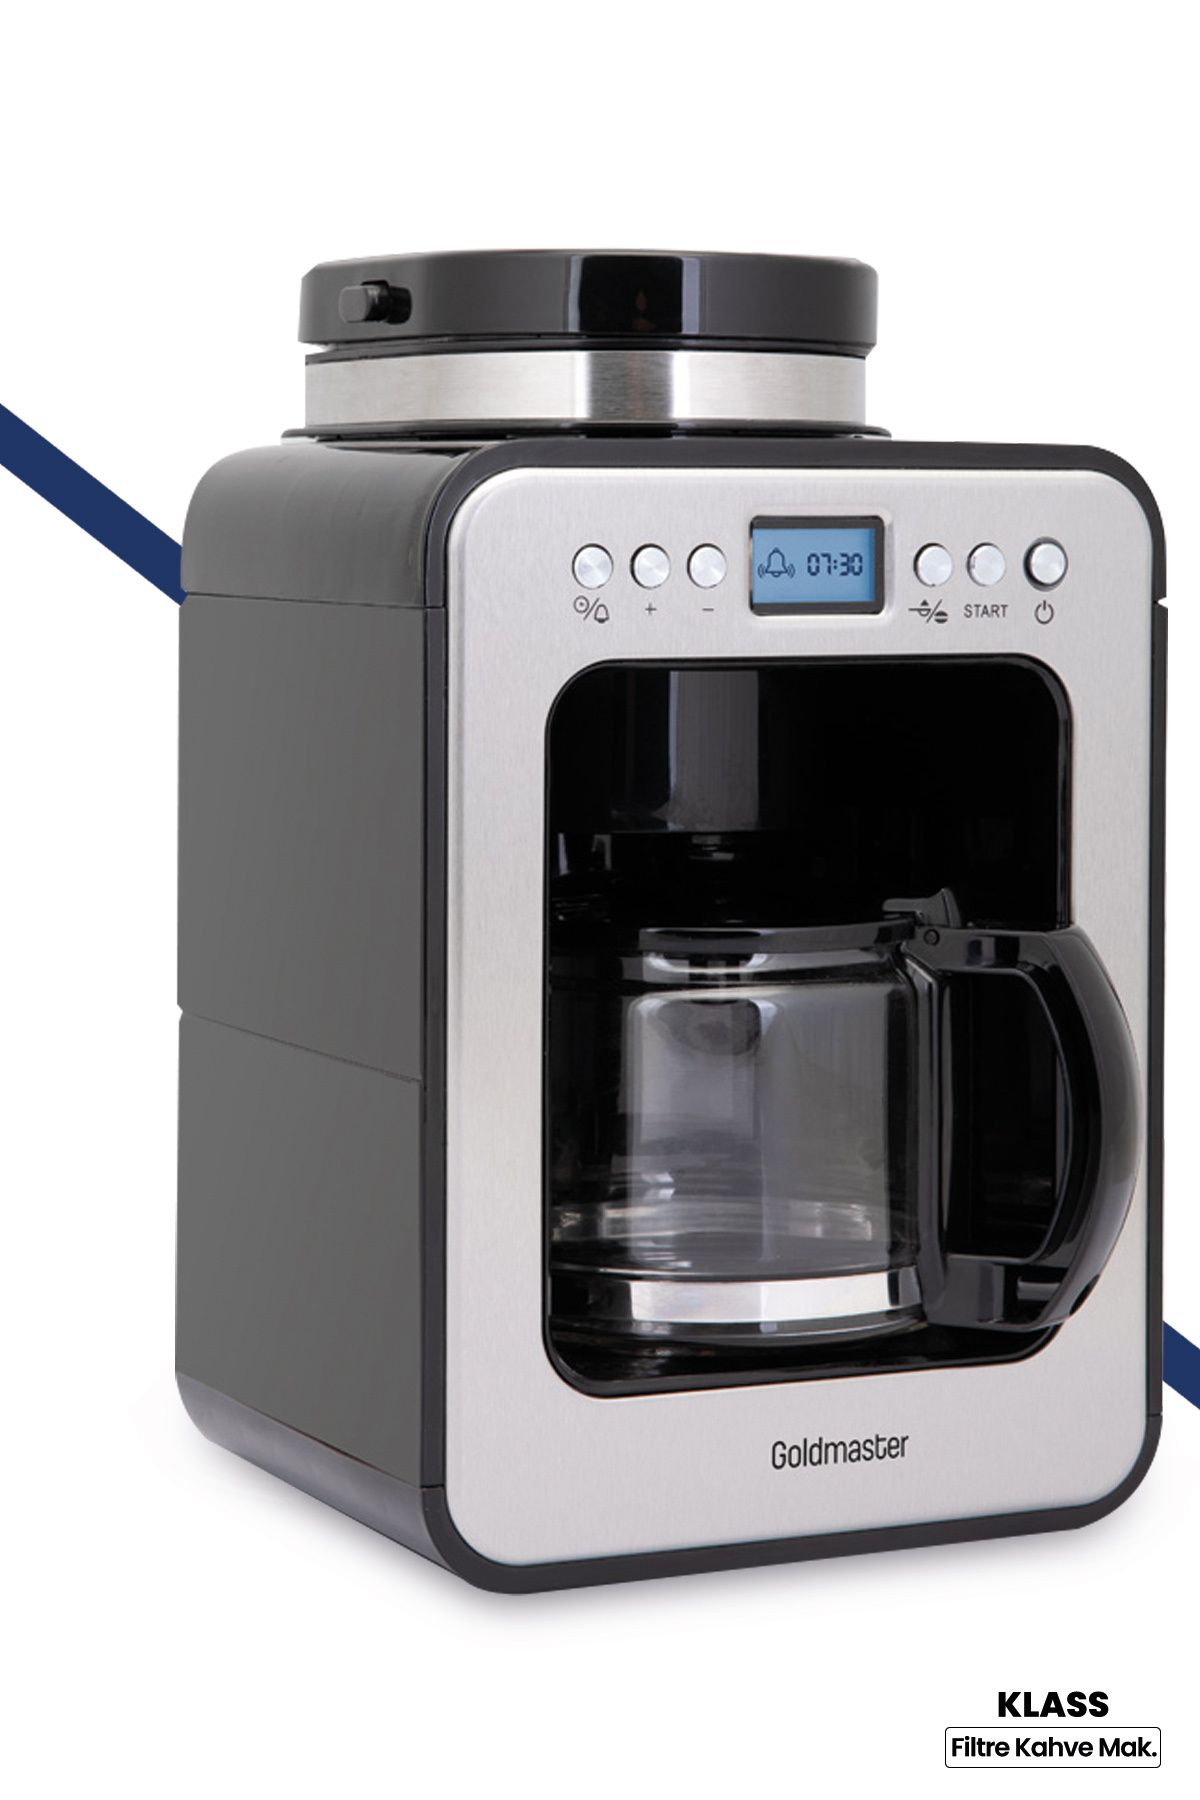 GoldMaster Klass 2 In 1 Öğütücülü Programlanabilir Tam Otomatik Filtre Kahve Makinesi